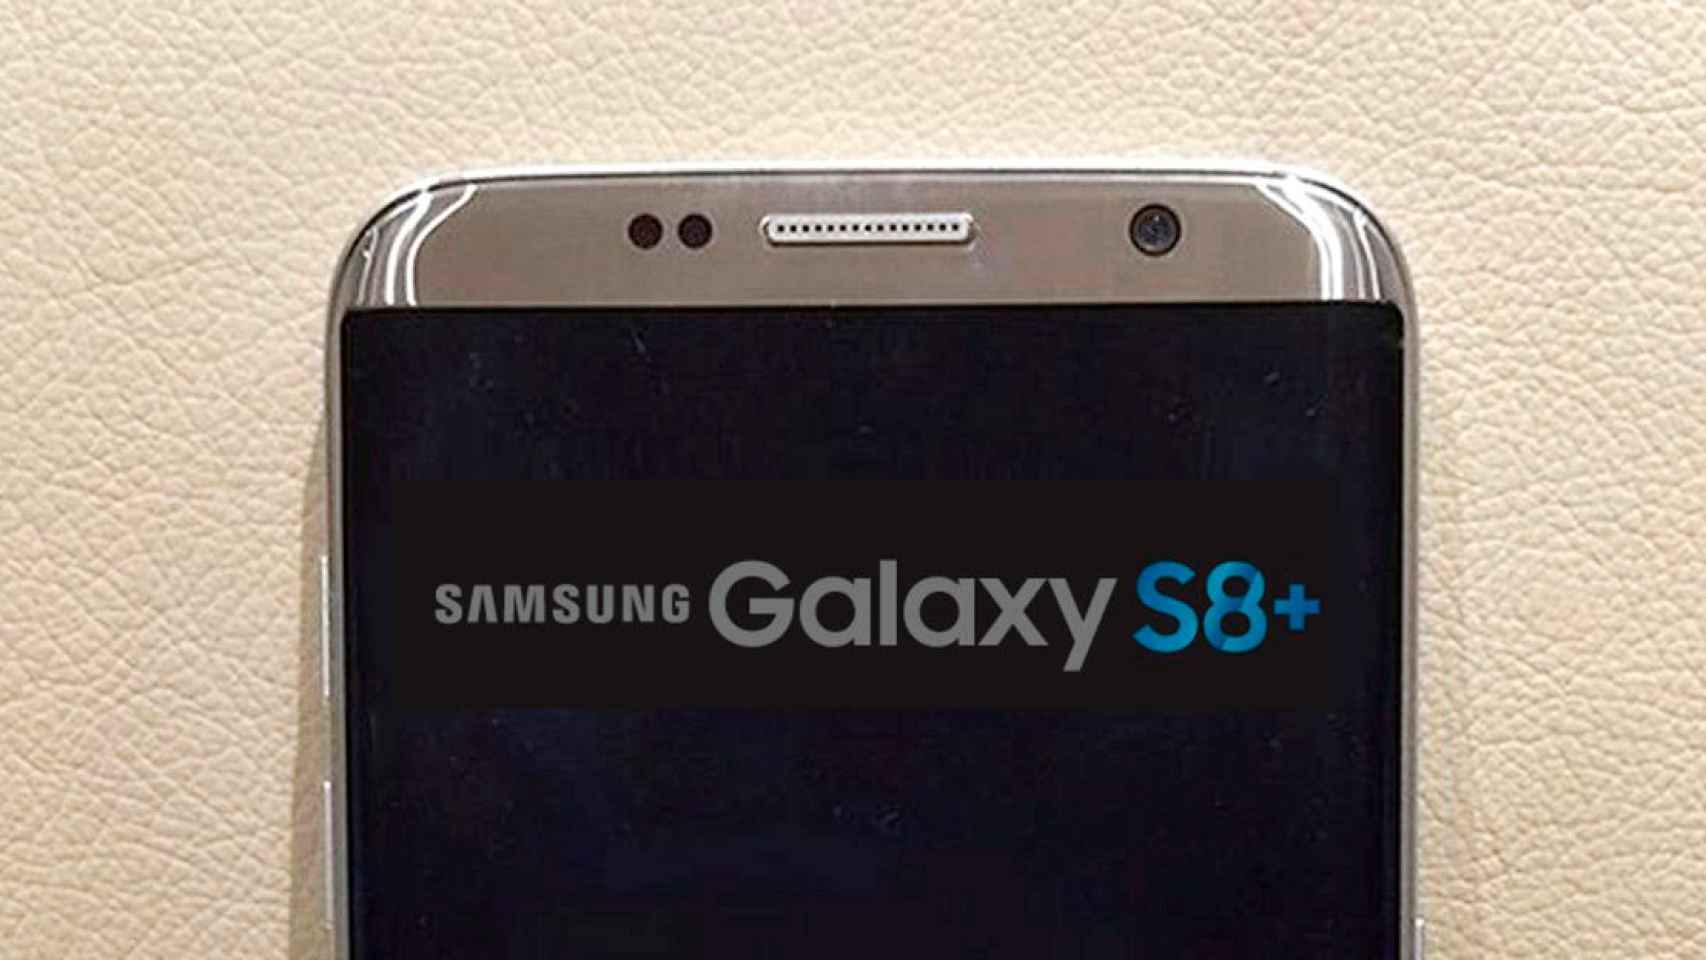 Samsung Galaxy S8+, así se llamará el móvil más potente de Samsung